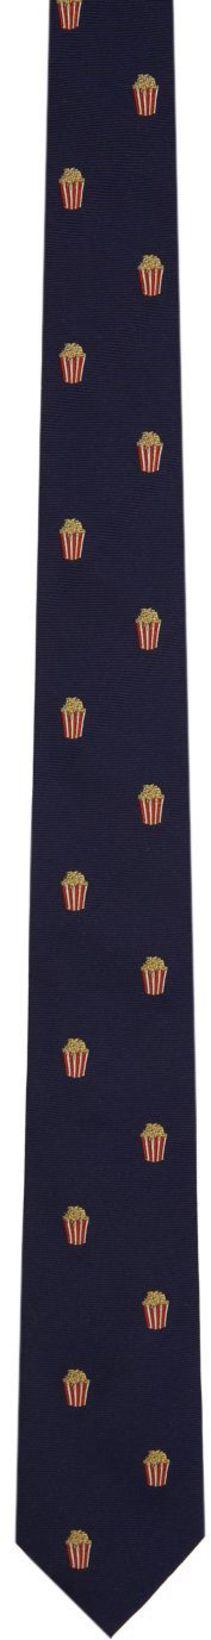 Navy Popcorn Tie by PAUL SMITH